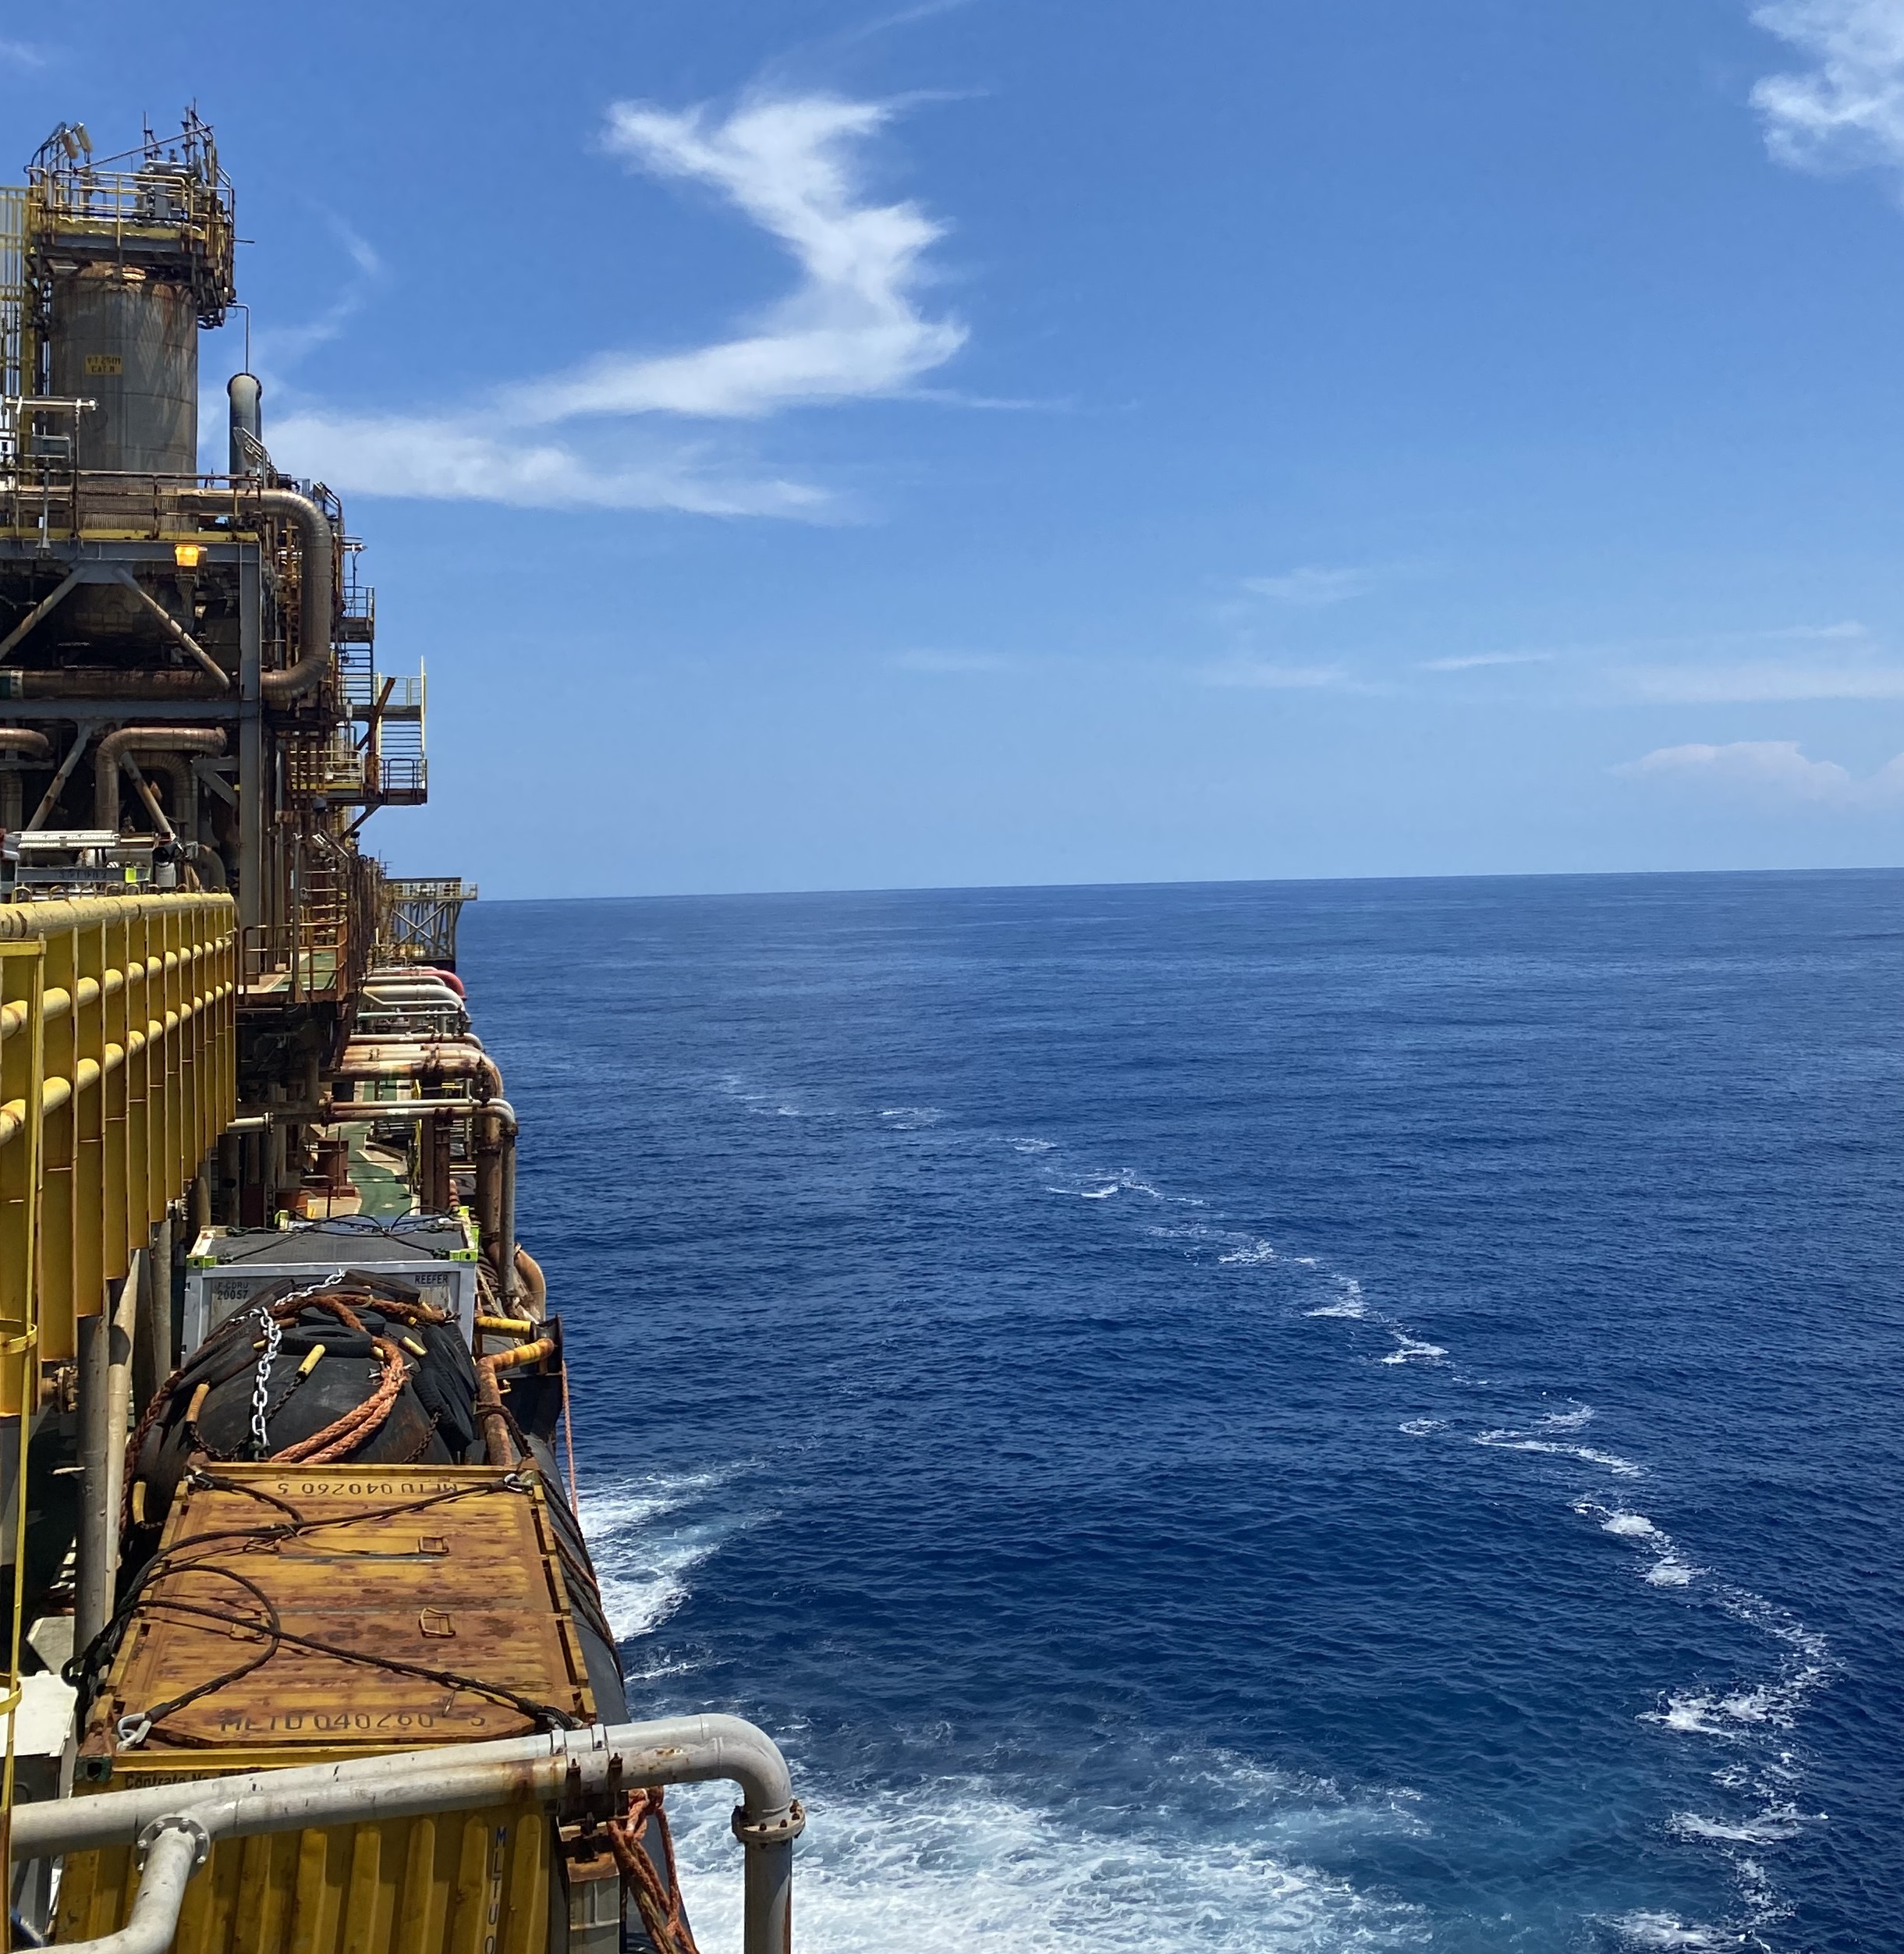 Plaaforma de petróleo e mar